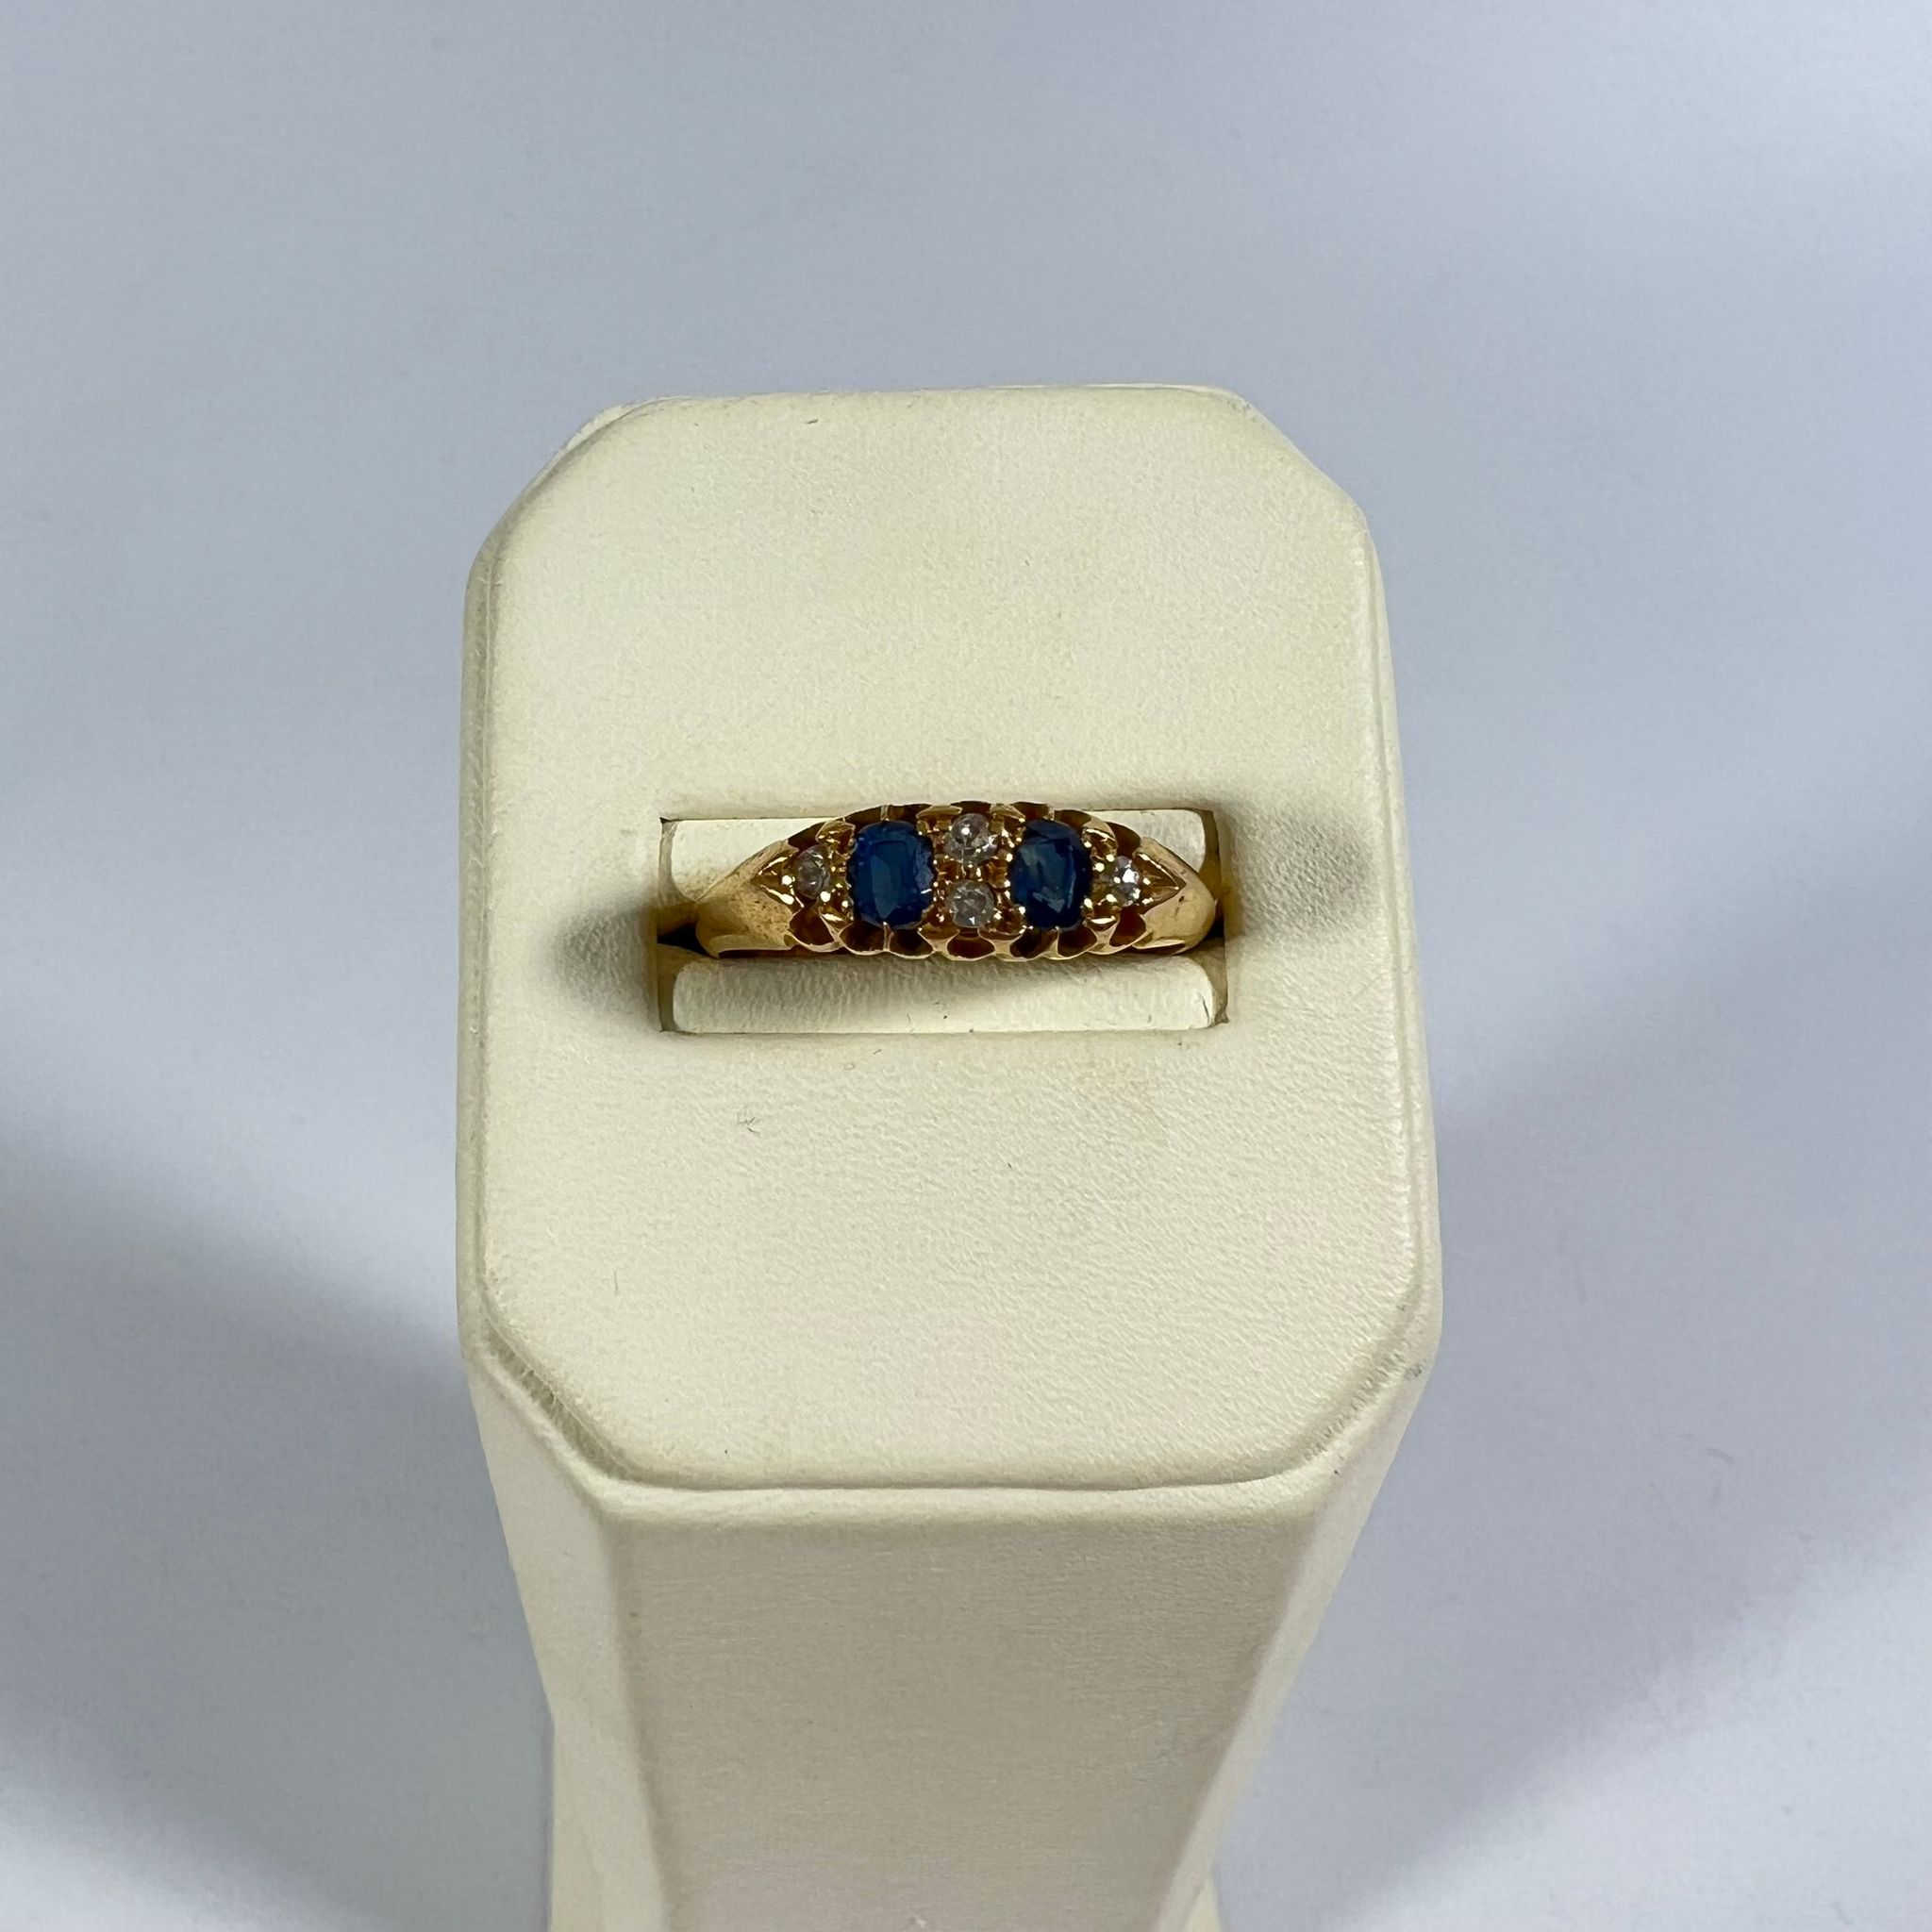 18ct Sapphire & Diamond ring - Birmingham 4g - size P 1/2.